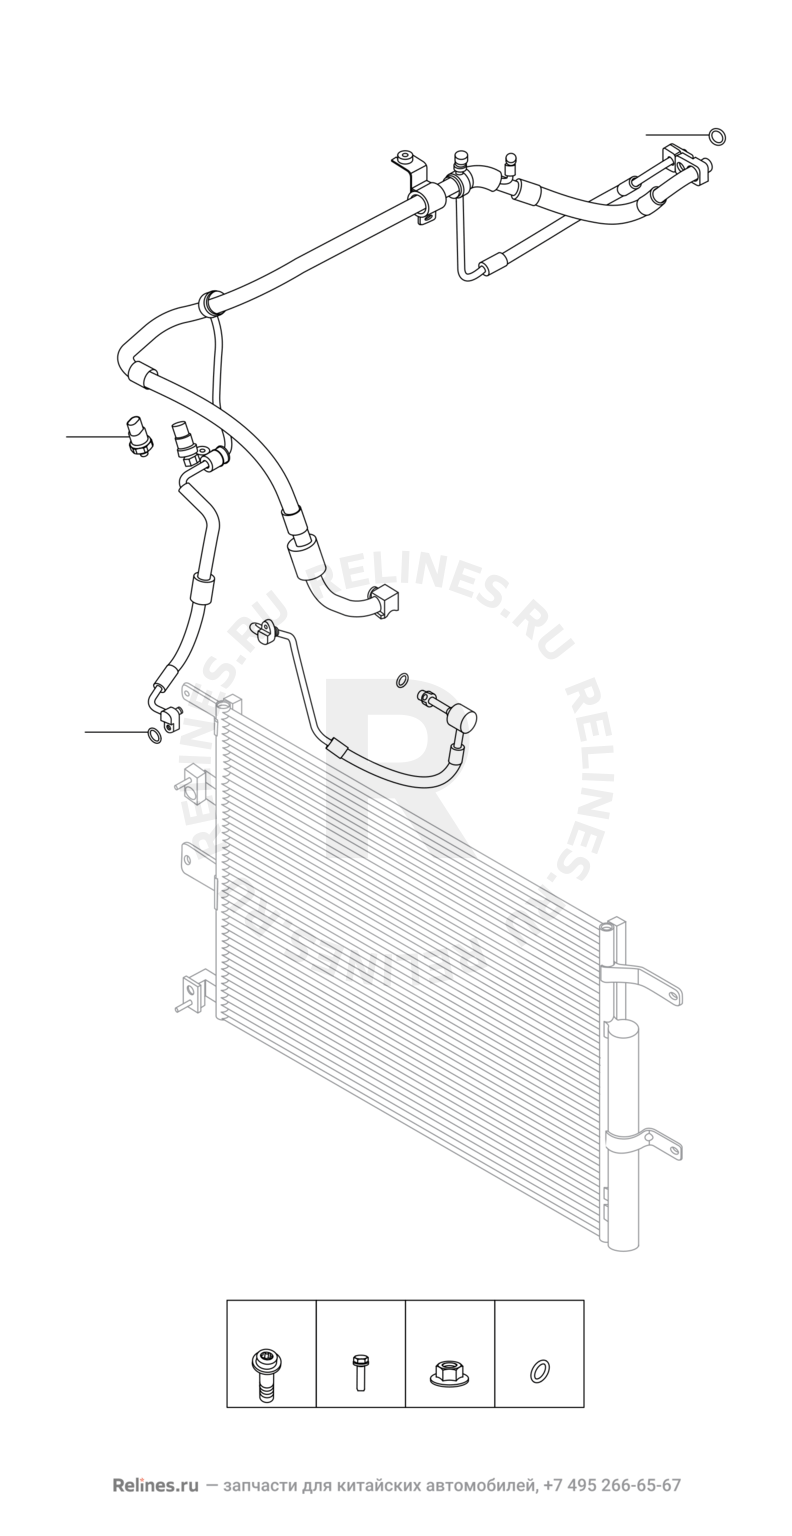 Запчасти Chery Tiggo 4 Поколение I — рестайлинг (2018)  — Компрессор и трубки кондиционера (1) — схема